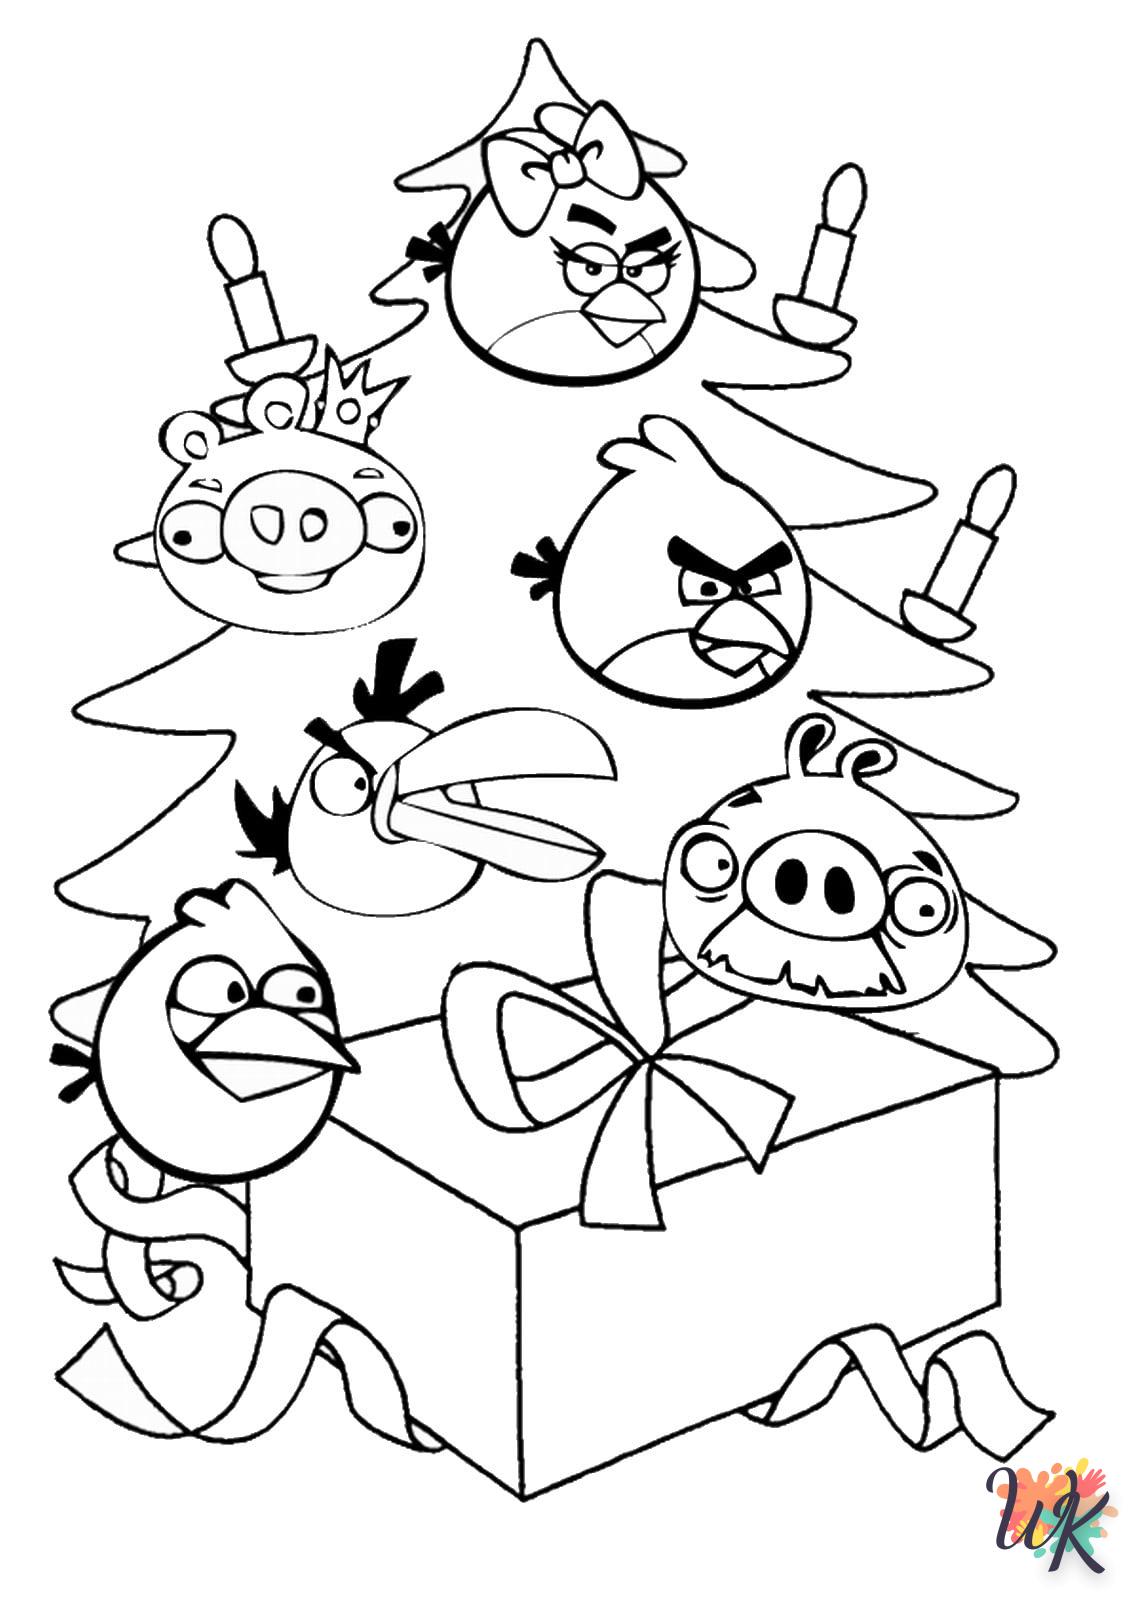 coloriage Angry Birds  à imprimer pour enfant de 8 ans